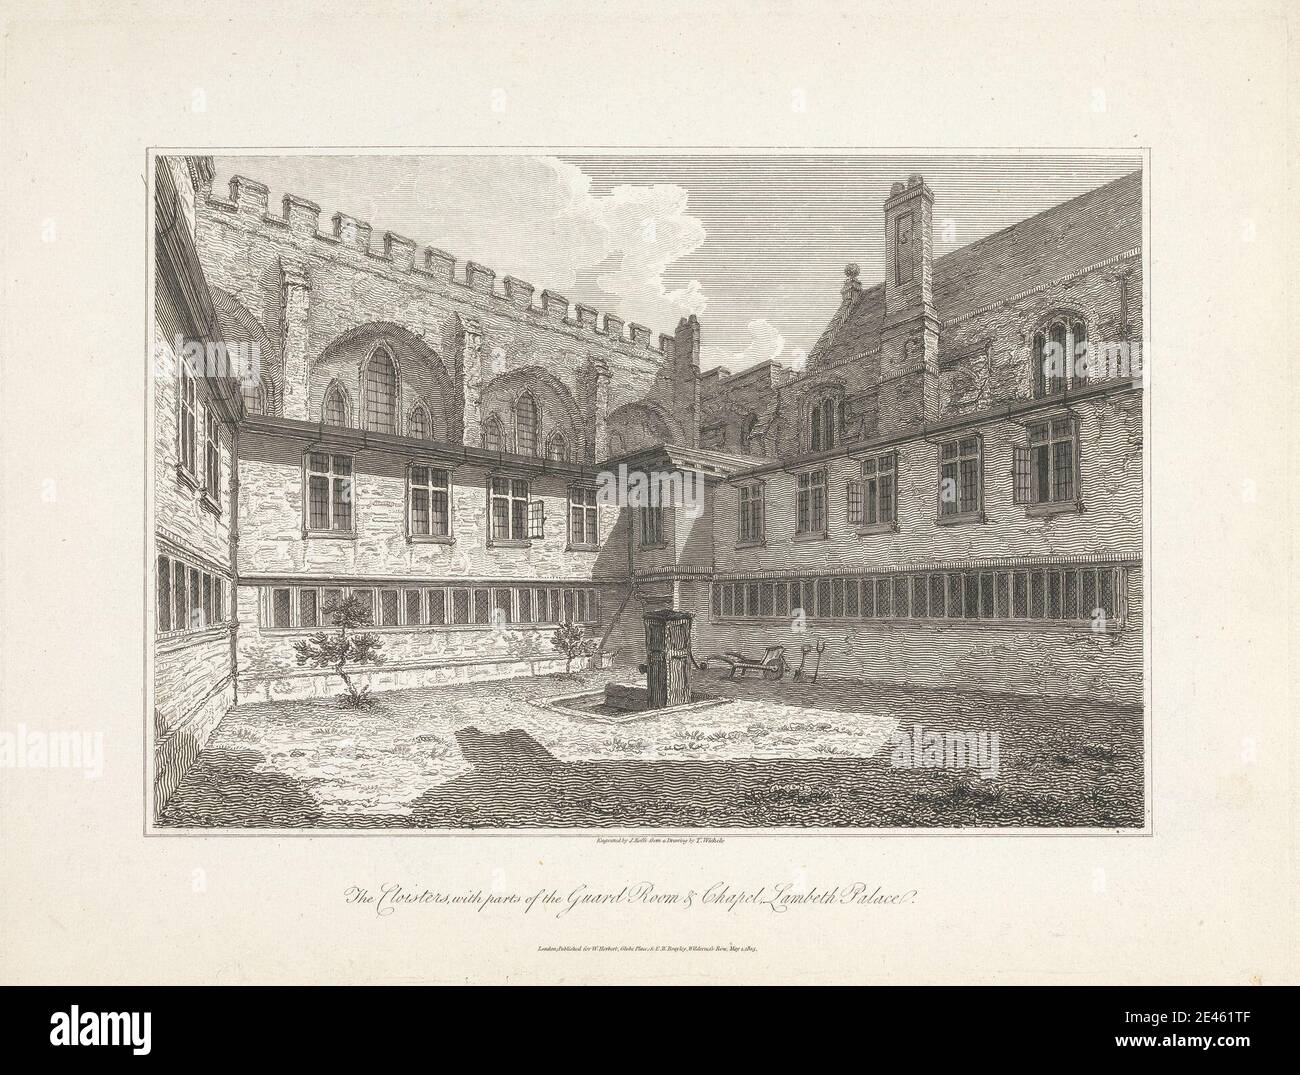 Nach C. John M. Whichelo, 1784â € "1865, britische, die Klöster, mit Teilen der Guard Room & Chapel, Lambeth Palace, 1805. Gravur. Stockfoto